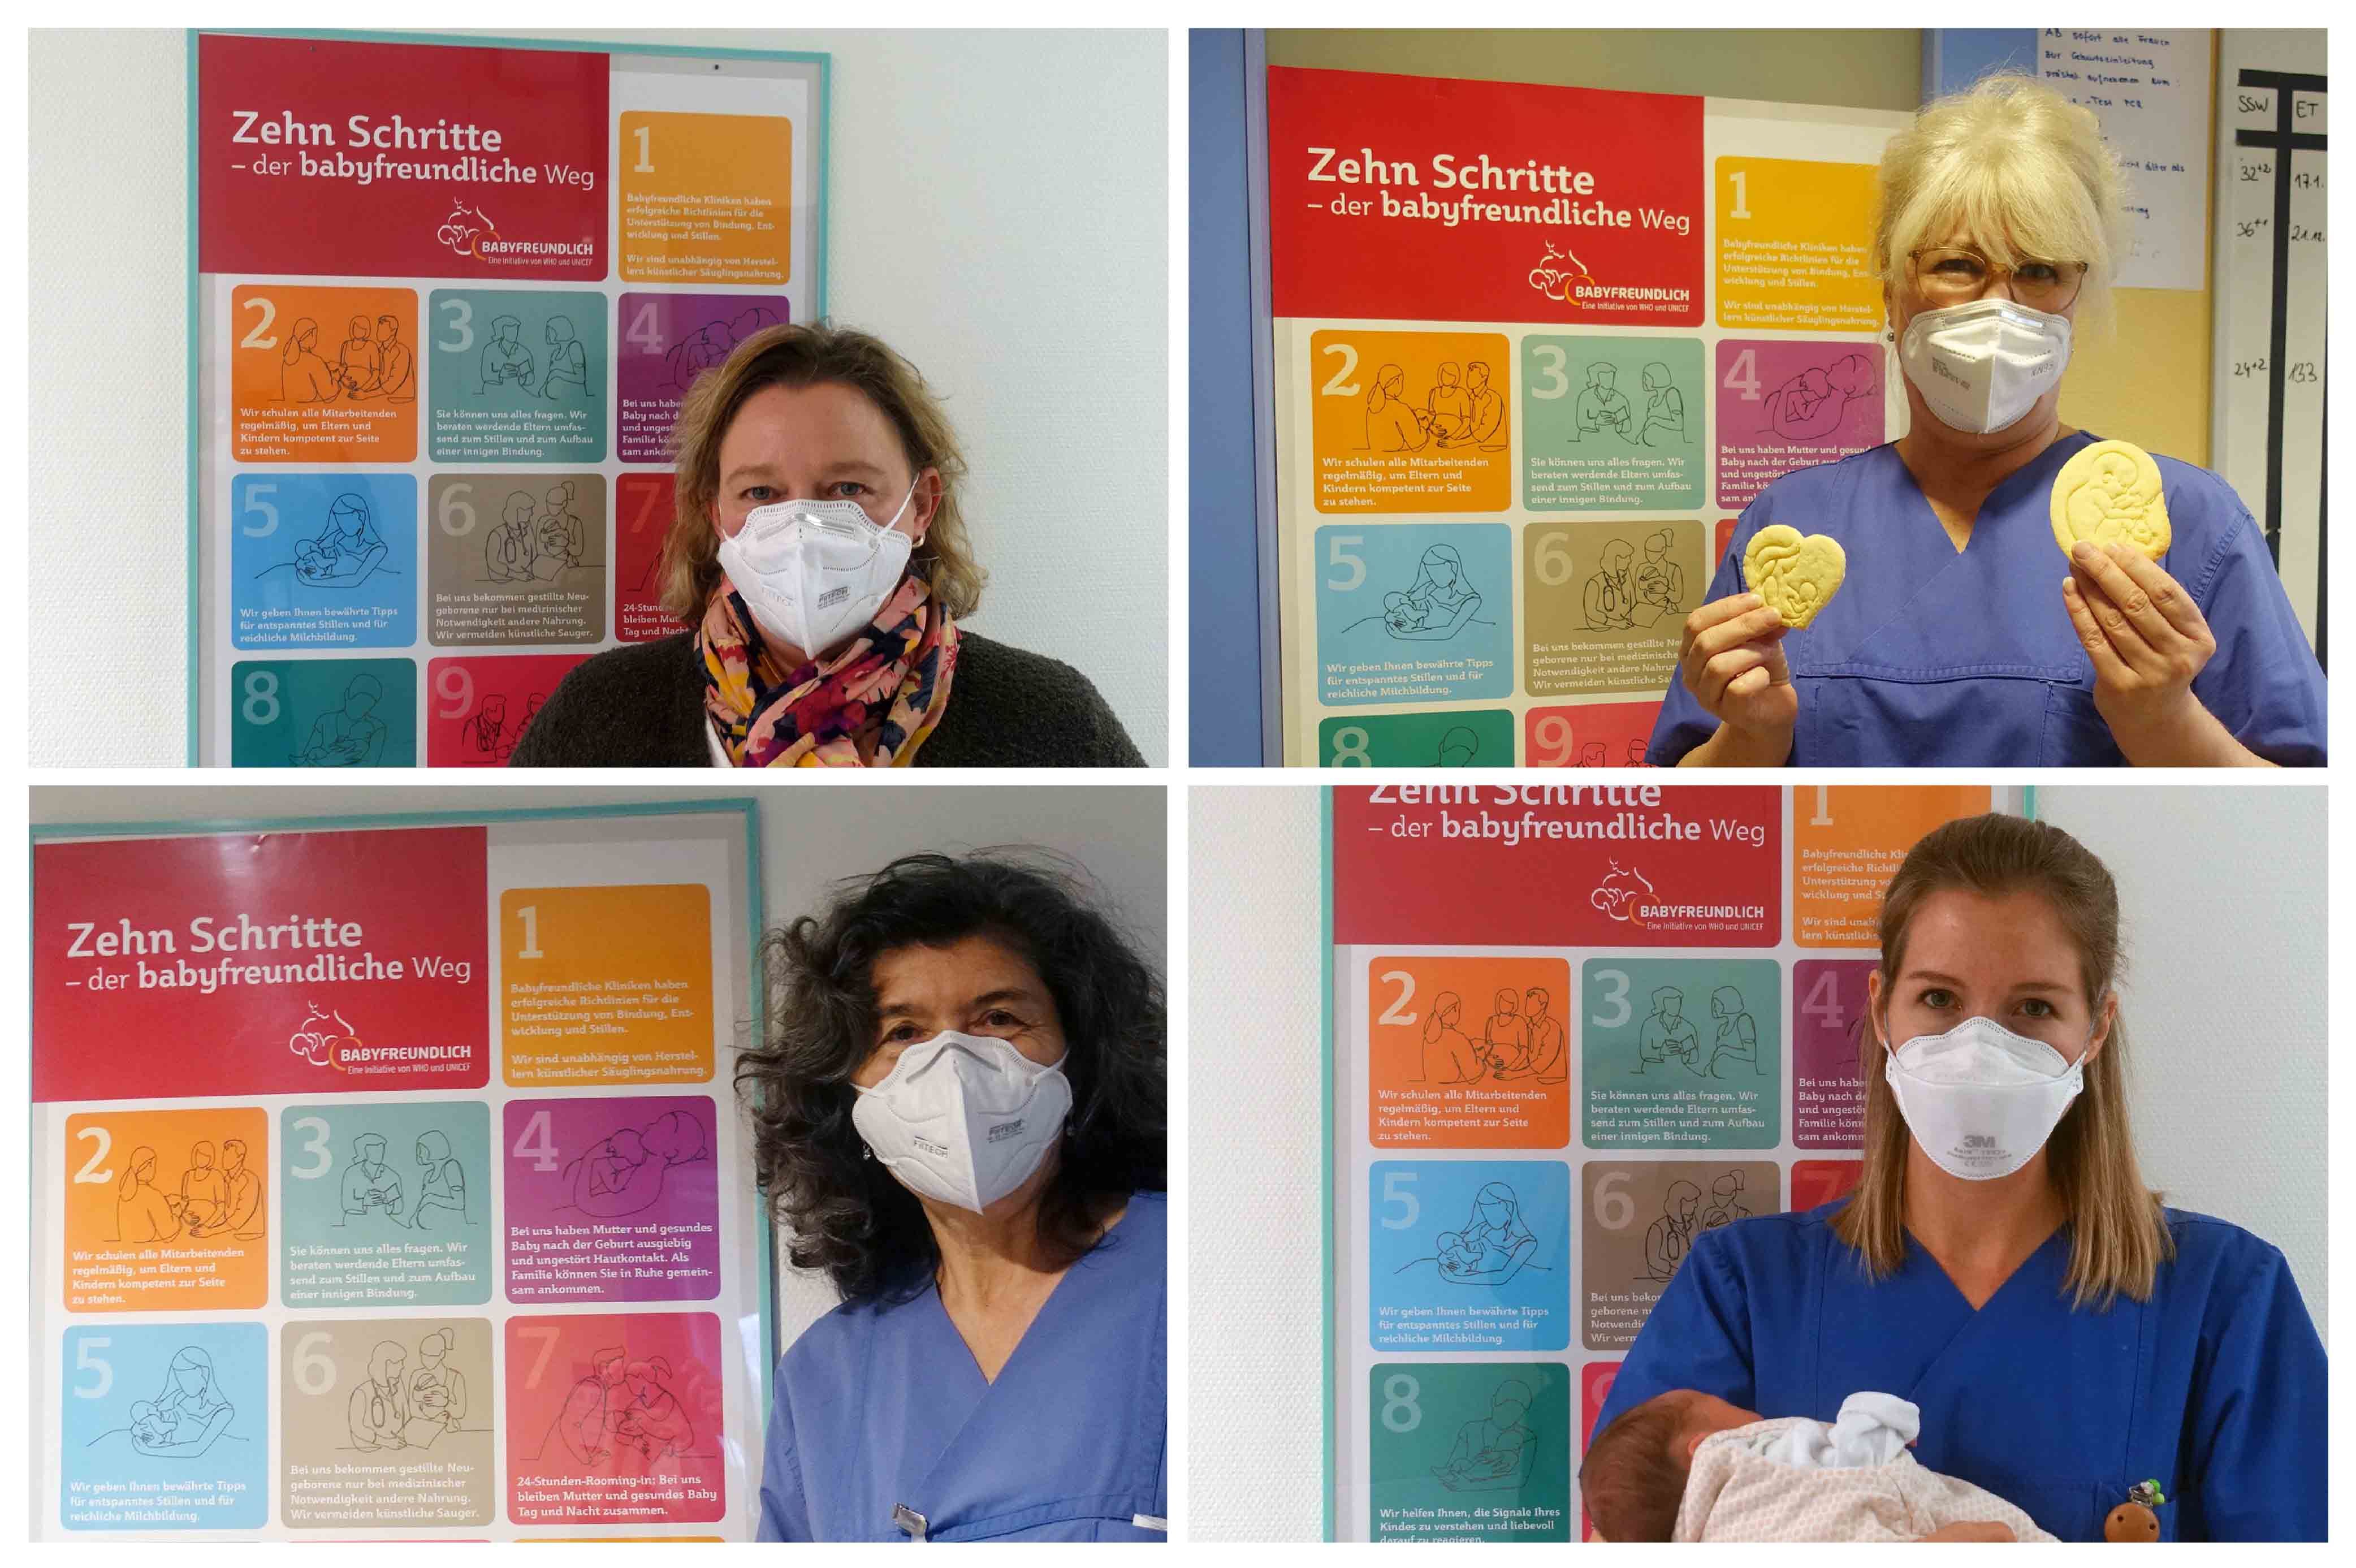 Collage Mitarbeiterinnen im Klinikum Saarbrücken vor Plakat: Der babyfreundliche Weg